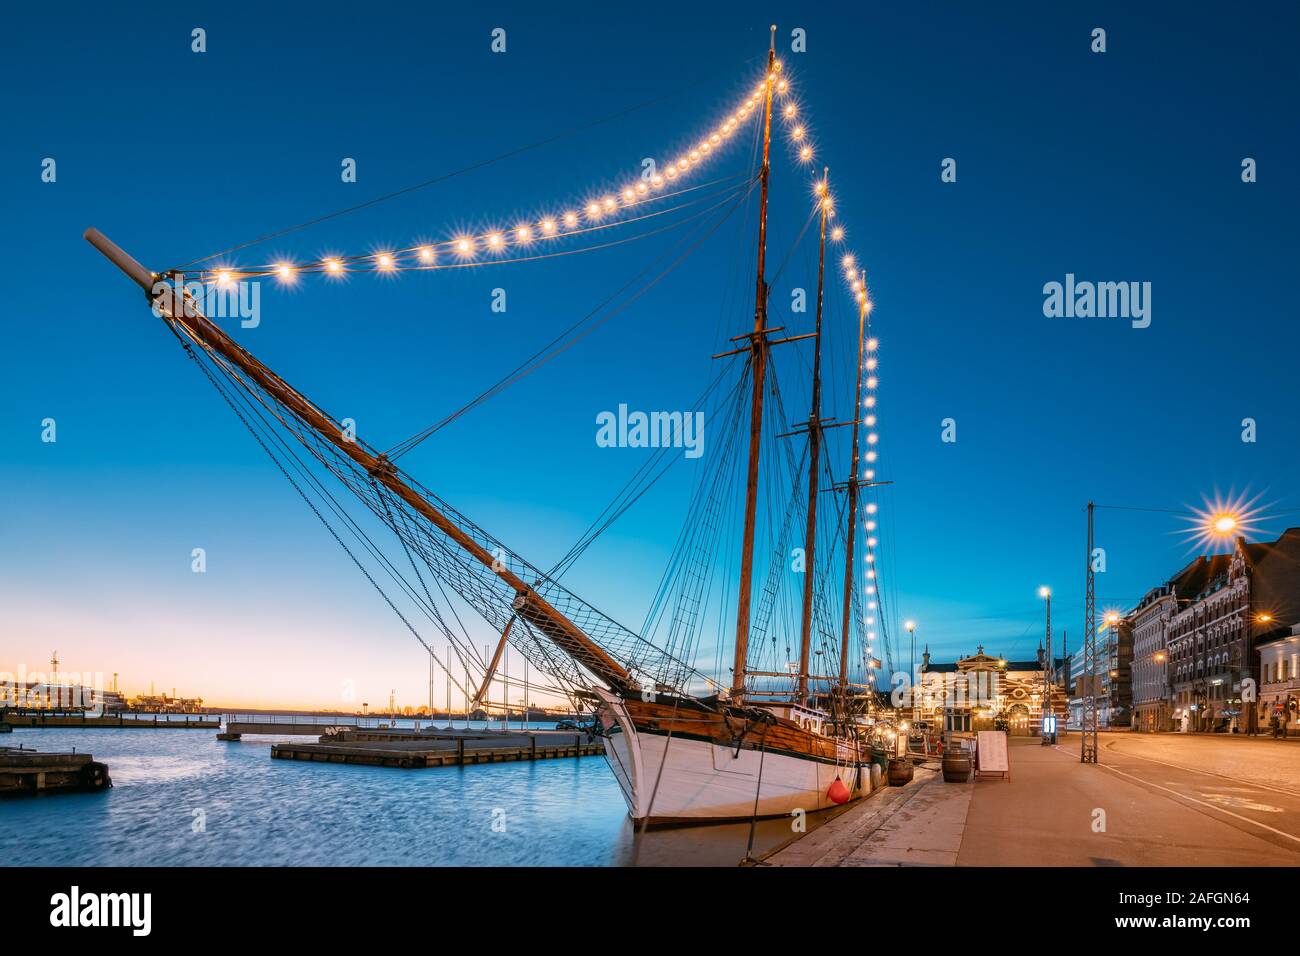 Helsinki, Finnland - 10. Dezember 2016: Alte hölzerne Segelboot Schiff Schoner ist mit der Stadt Pier, Steg vertäut. Ungewöhnliche Cafe Restaurant in Stadt Cent Stockfoto